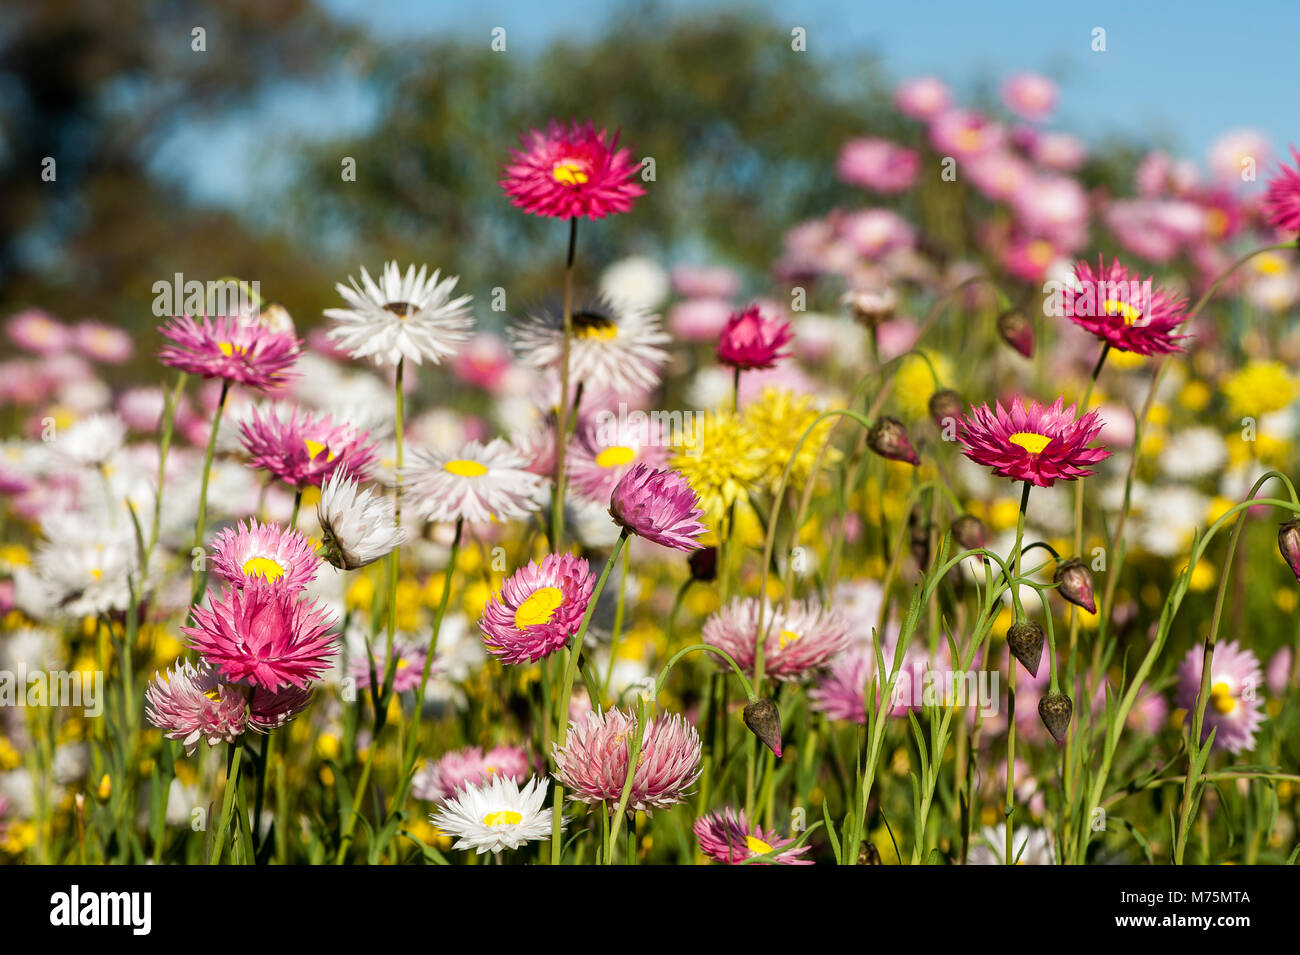 Domaine de couleur ou papier éternelle daisies, baisser la tête au soleil. Le printemps à Kings Park, Australie occidentale Banque D'Images